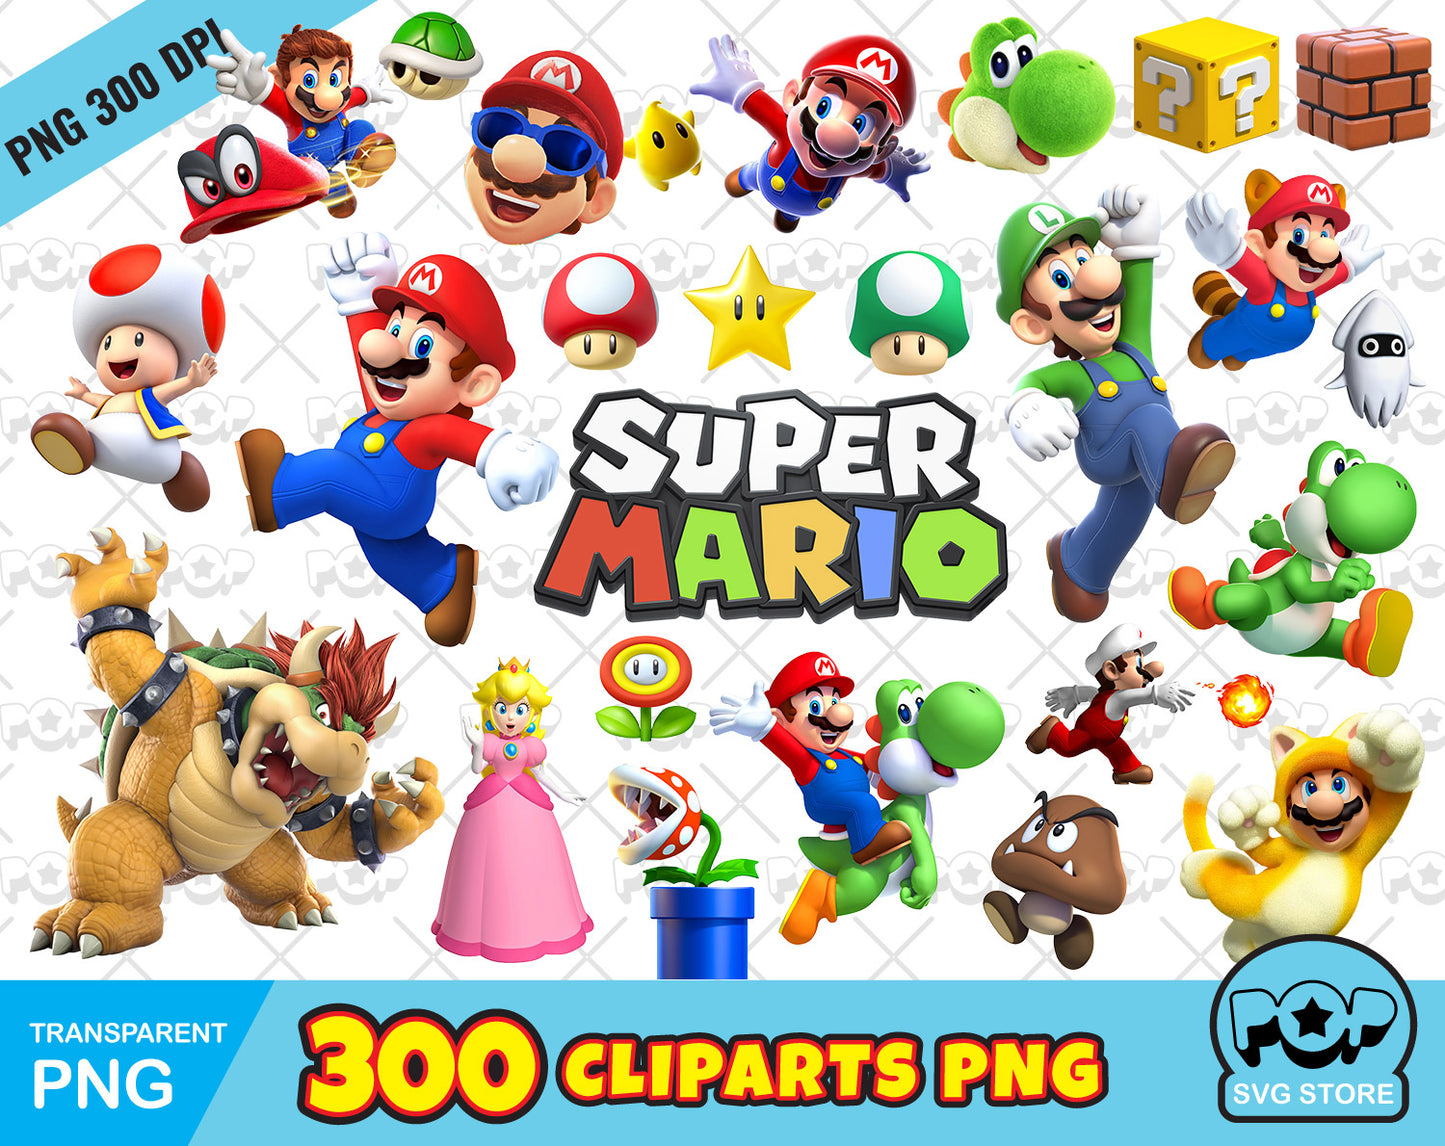 Super Mario 300 cliparts bundle, transparent PNG, designs for decoration / sublimation, instant download